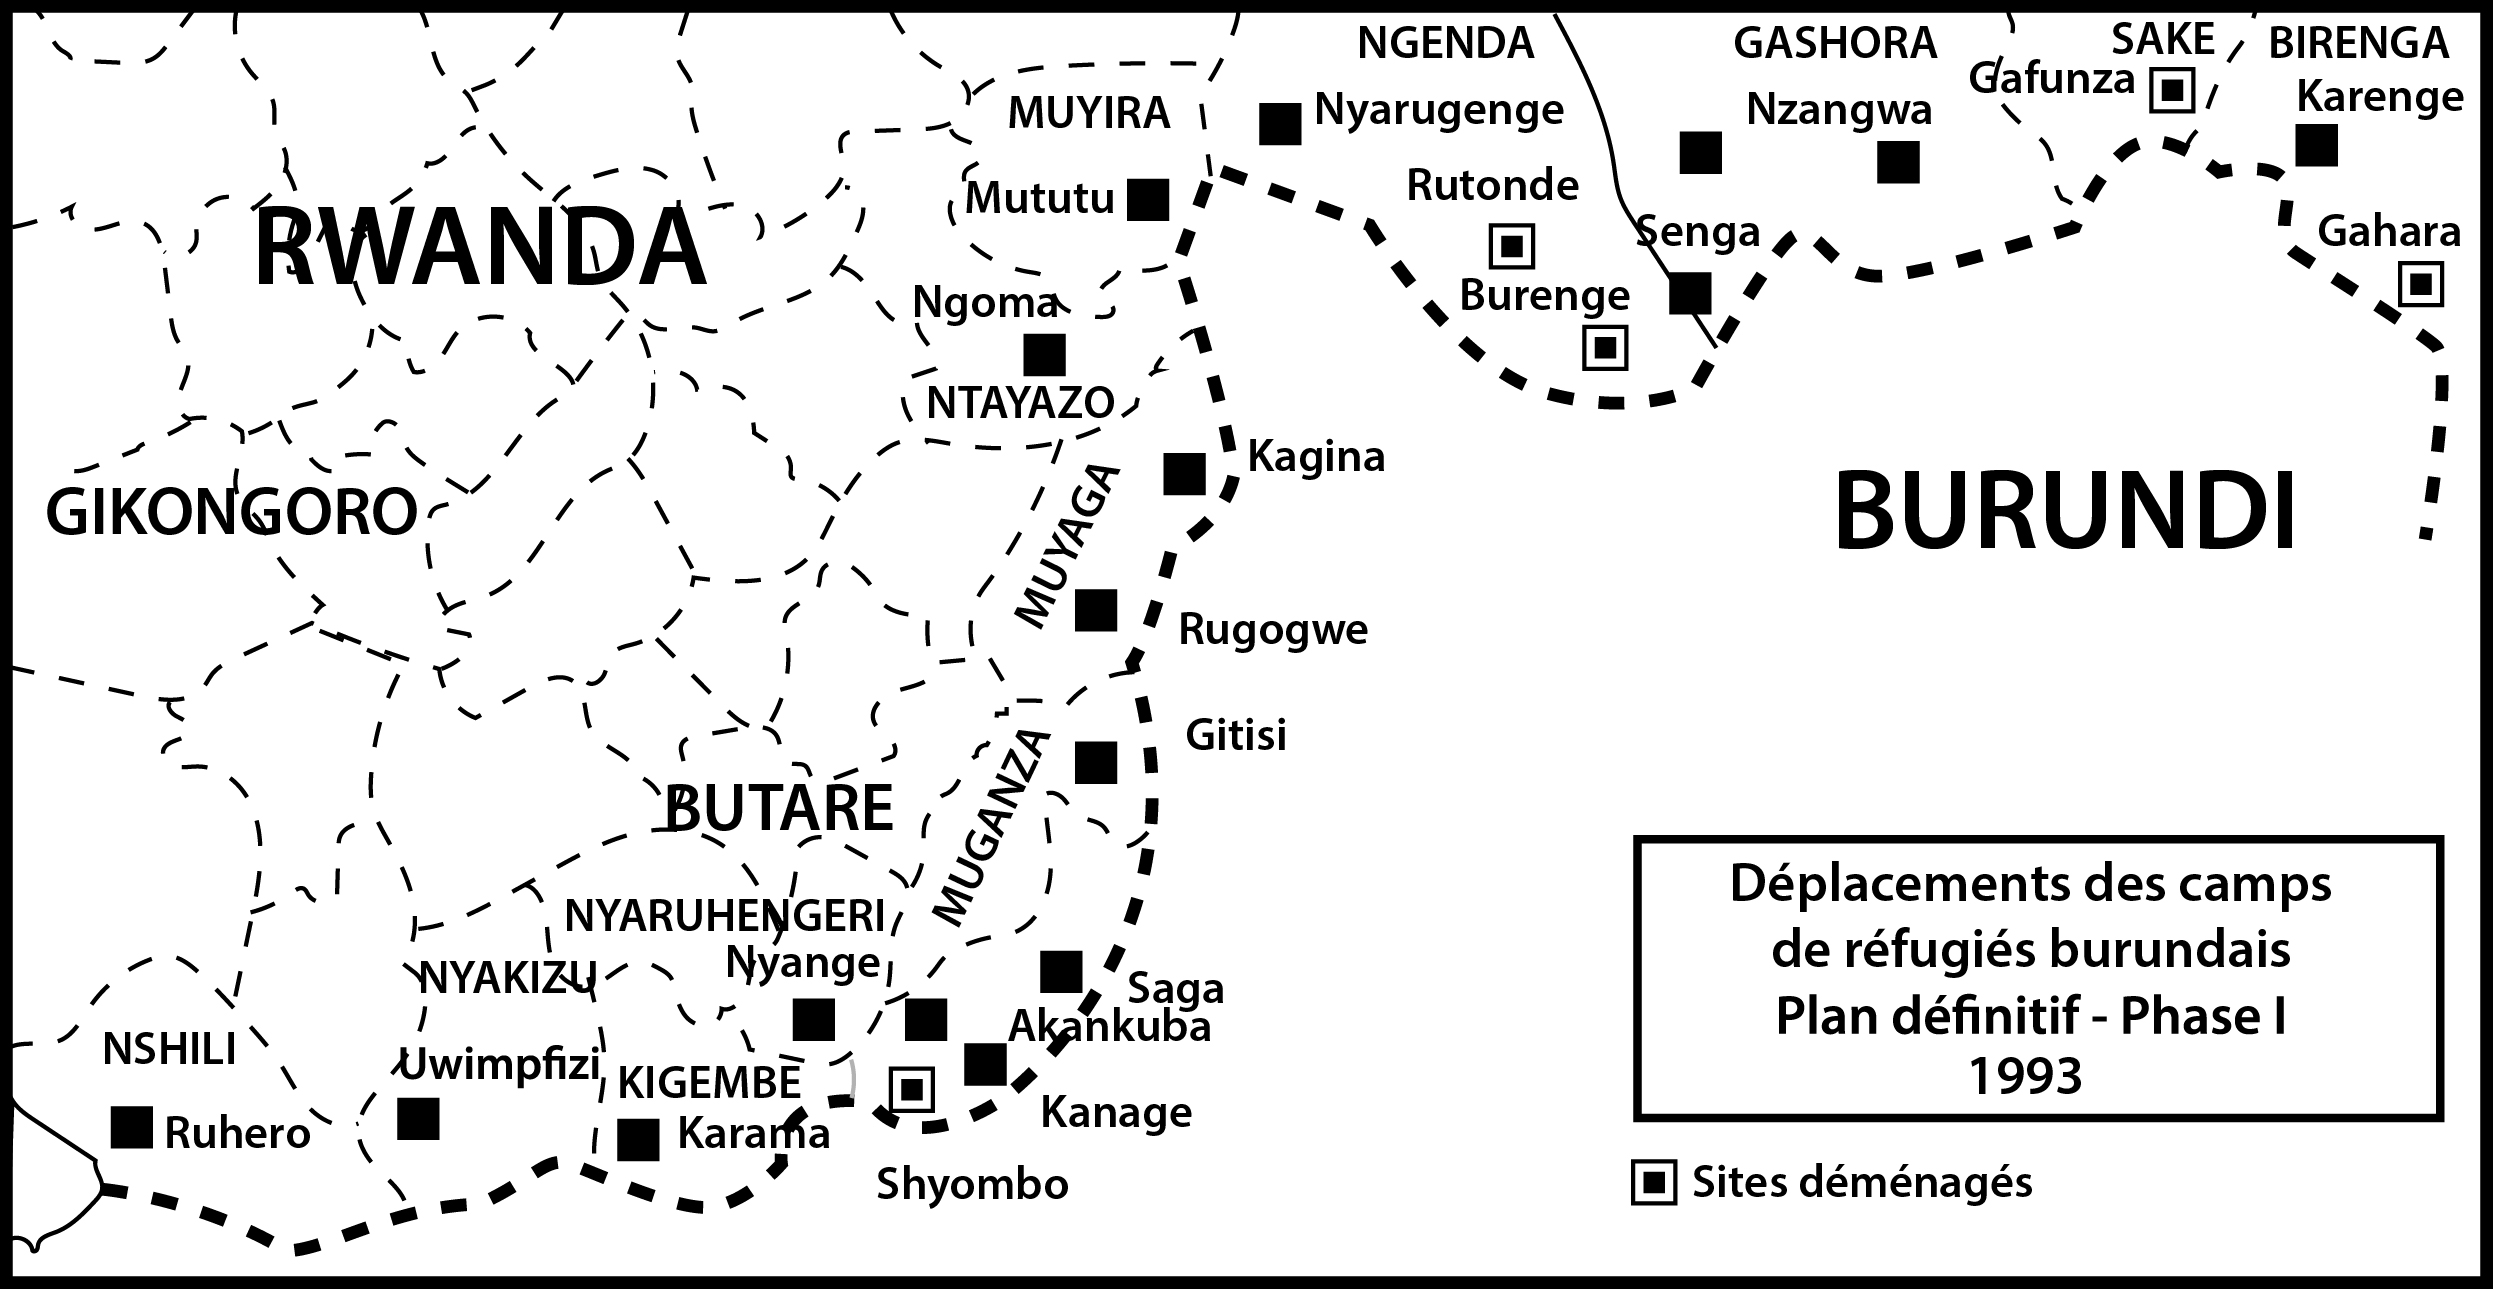 Déplacements des camps de réfugiés burundais. Plan définitif - Phase I 1993